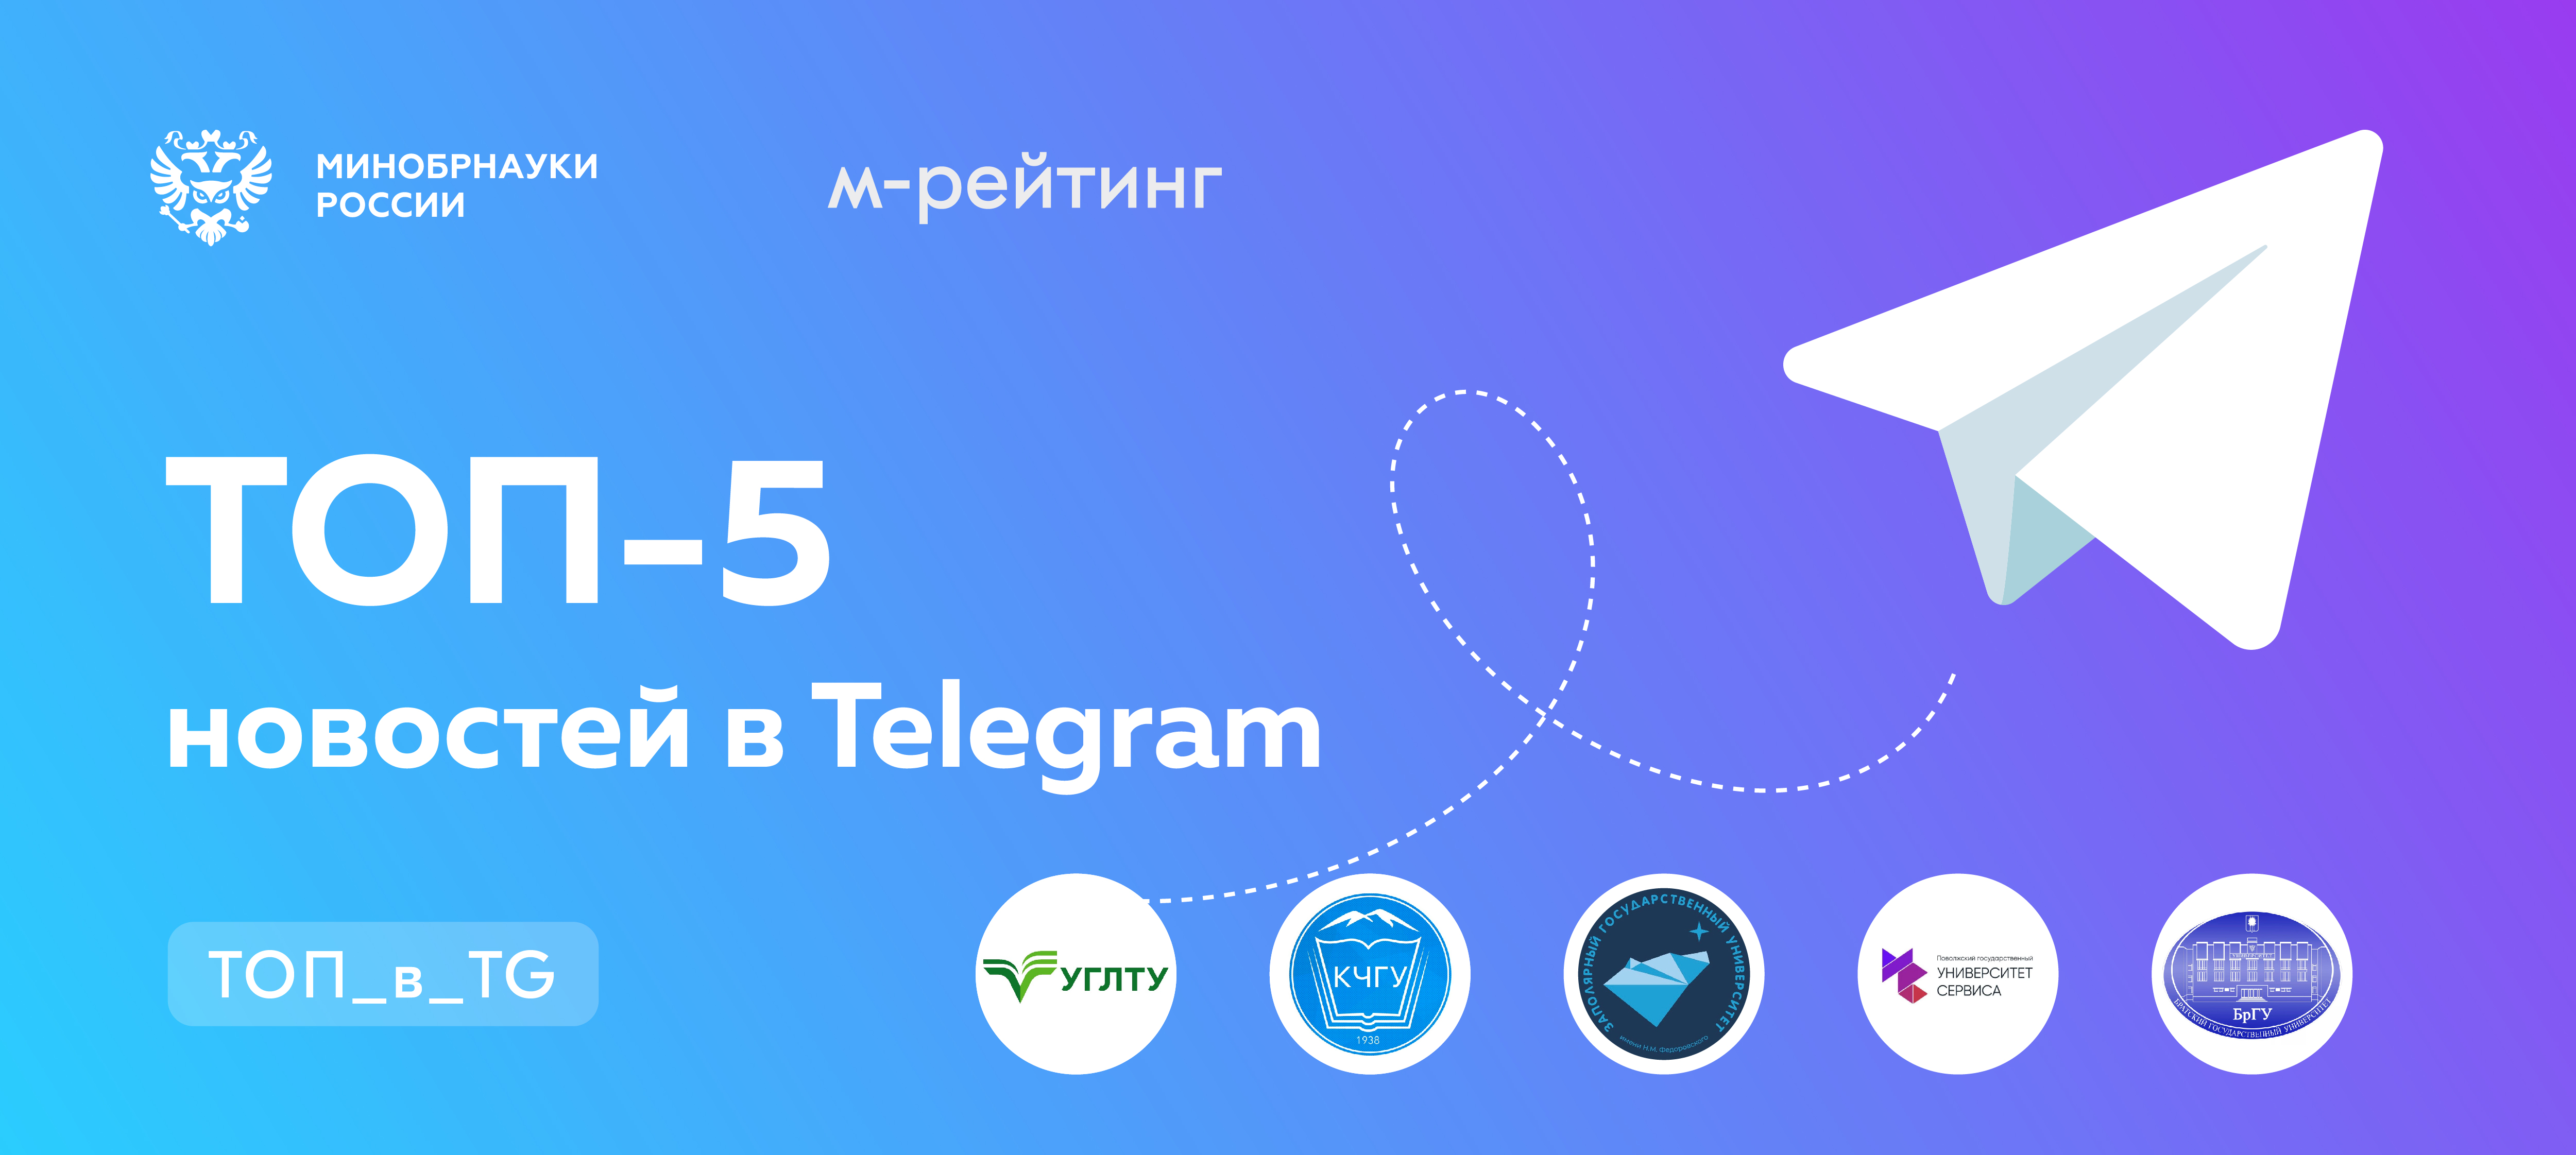 Телеграмм официальный сайт на русском для ноутбука фото 73